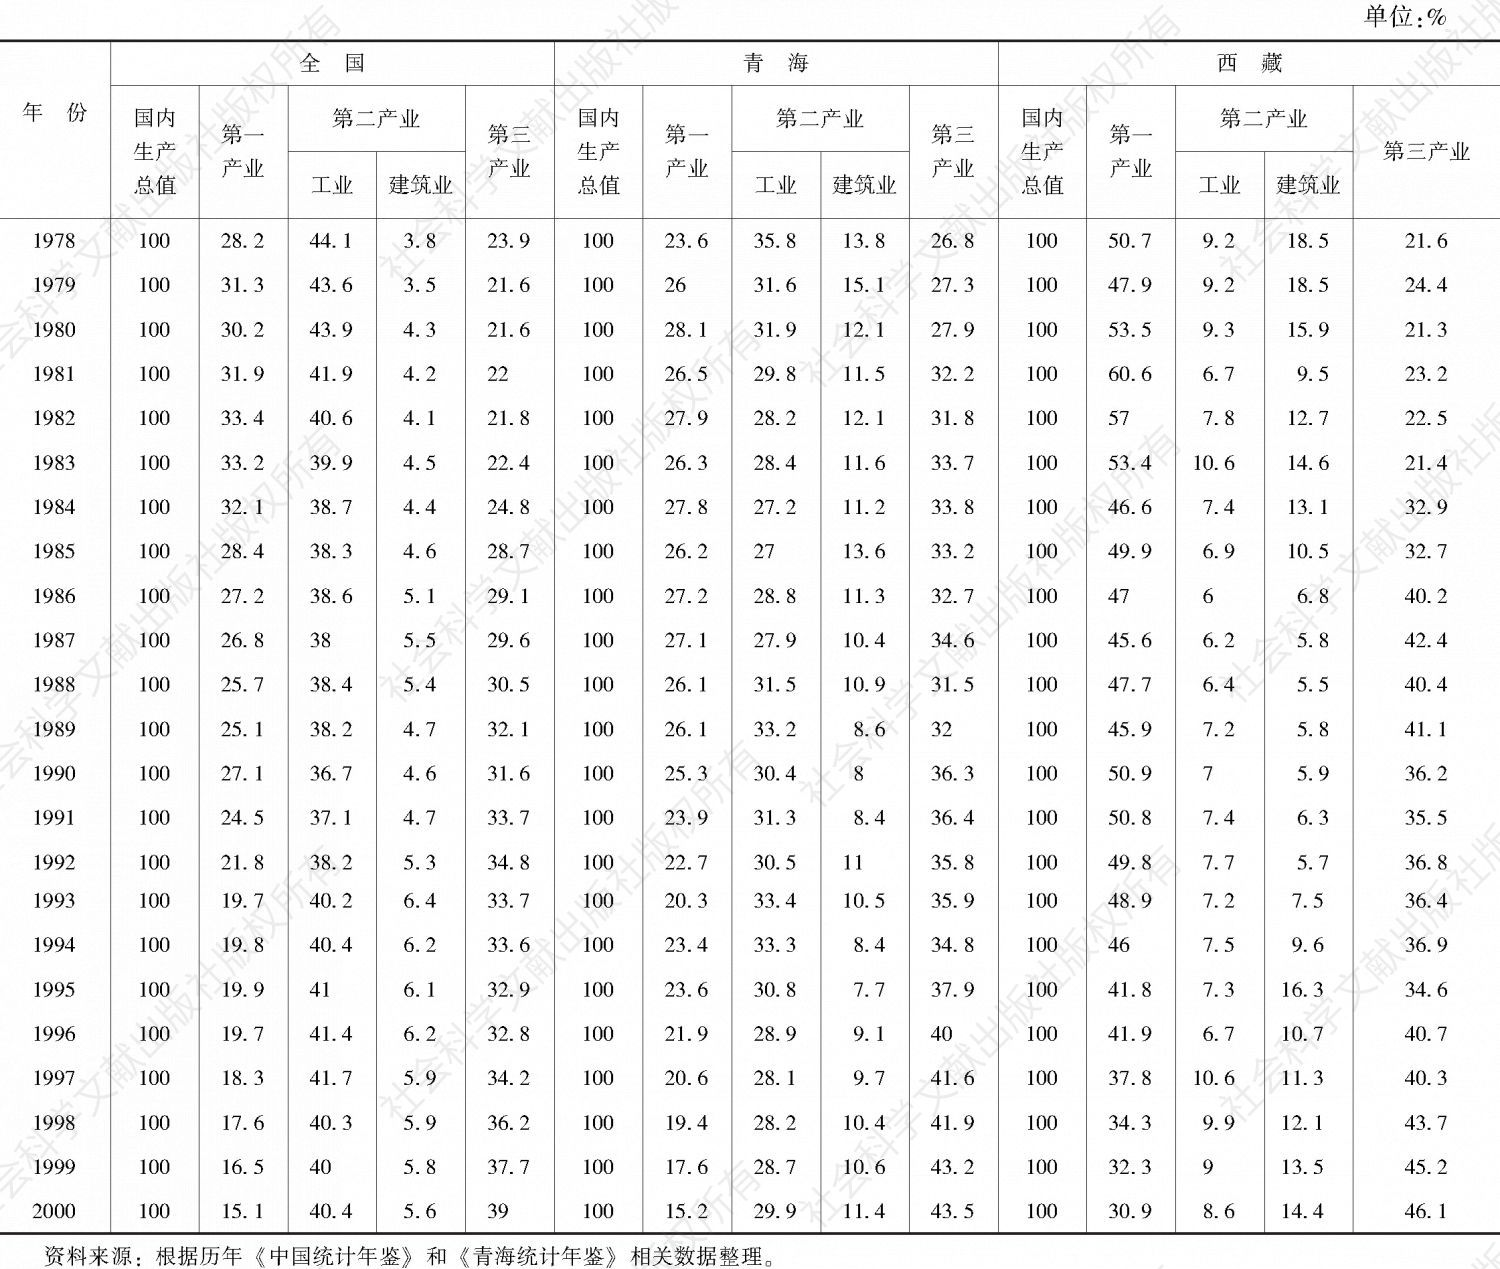 表1 1978～2000年全国、青海、西藏产业结构情况对比